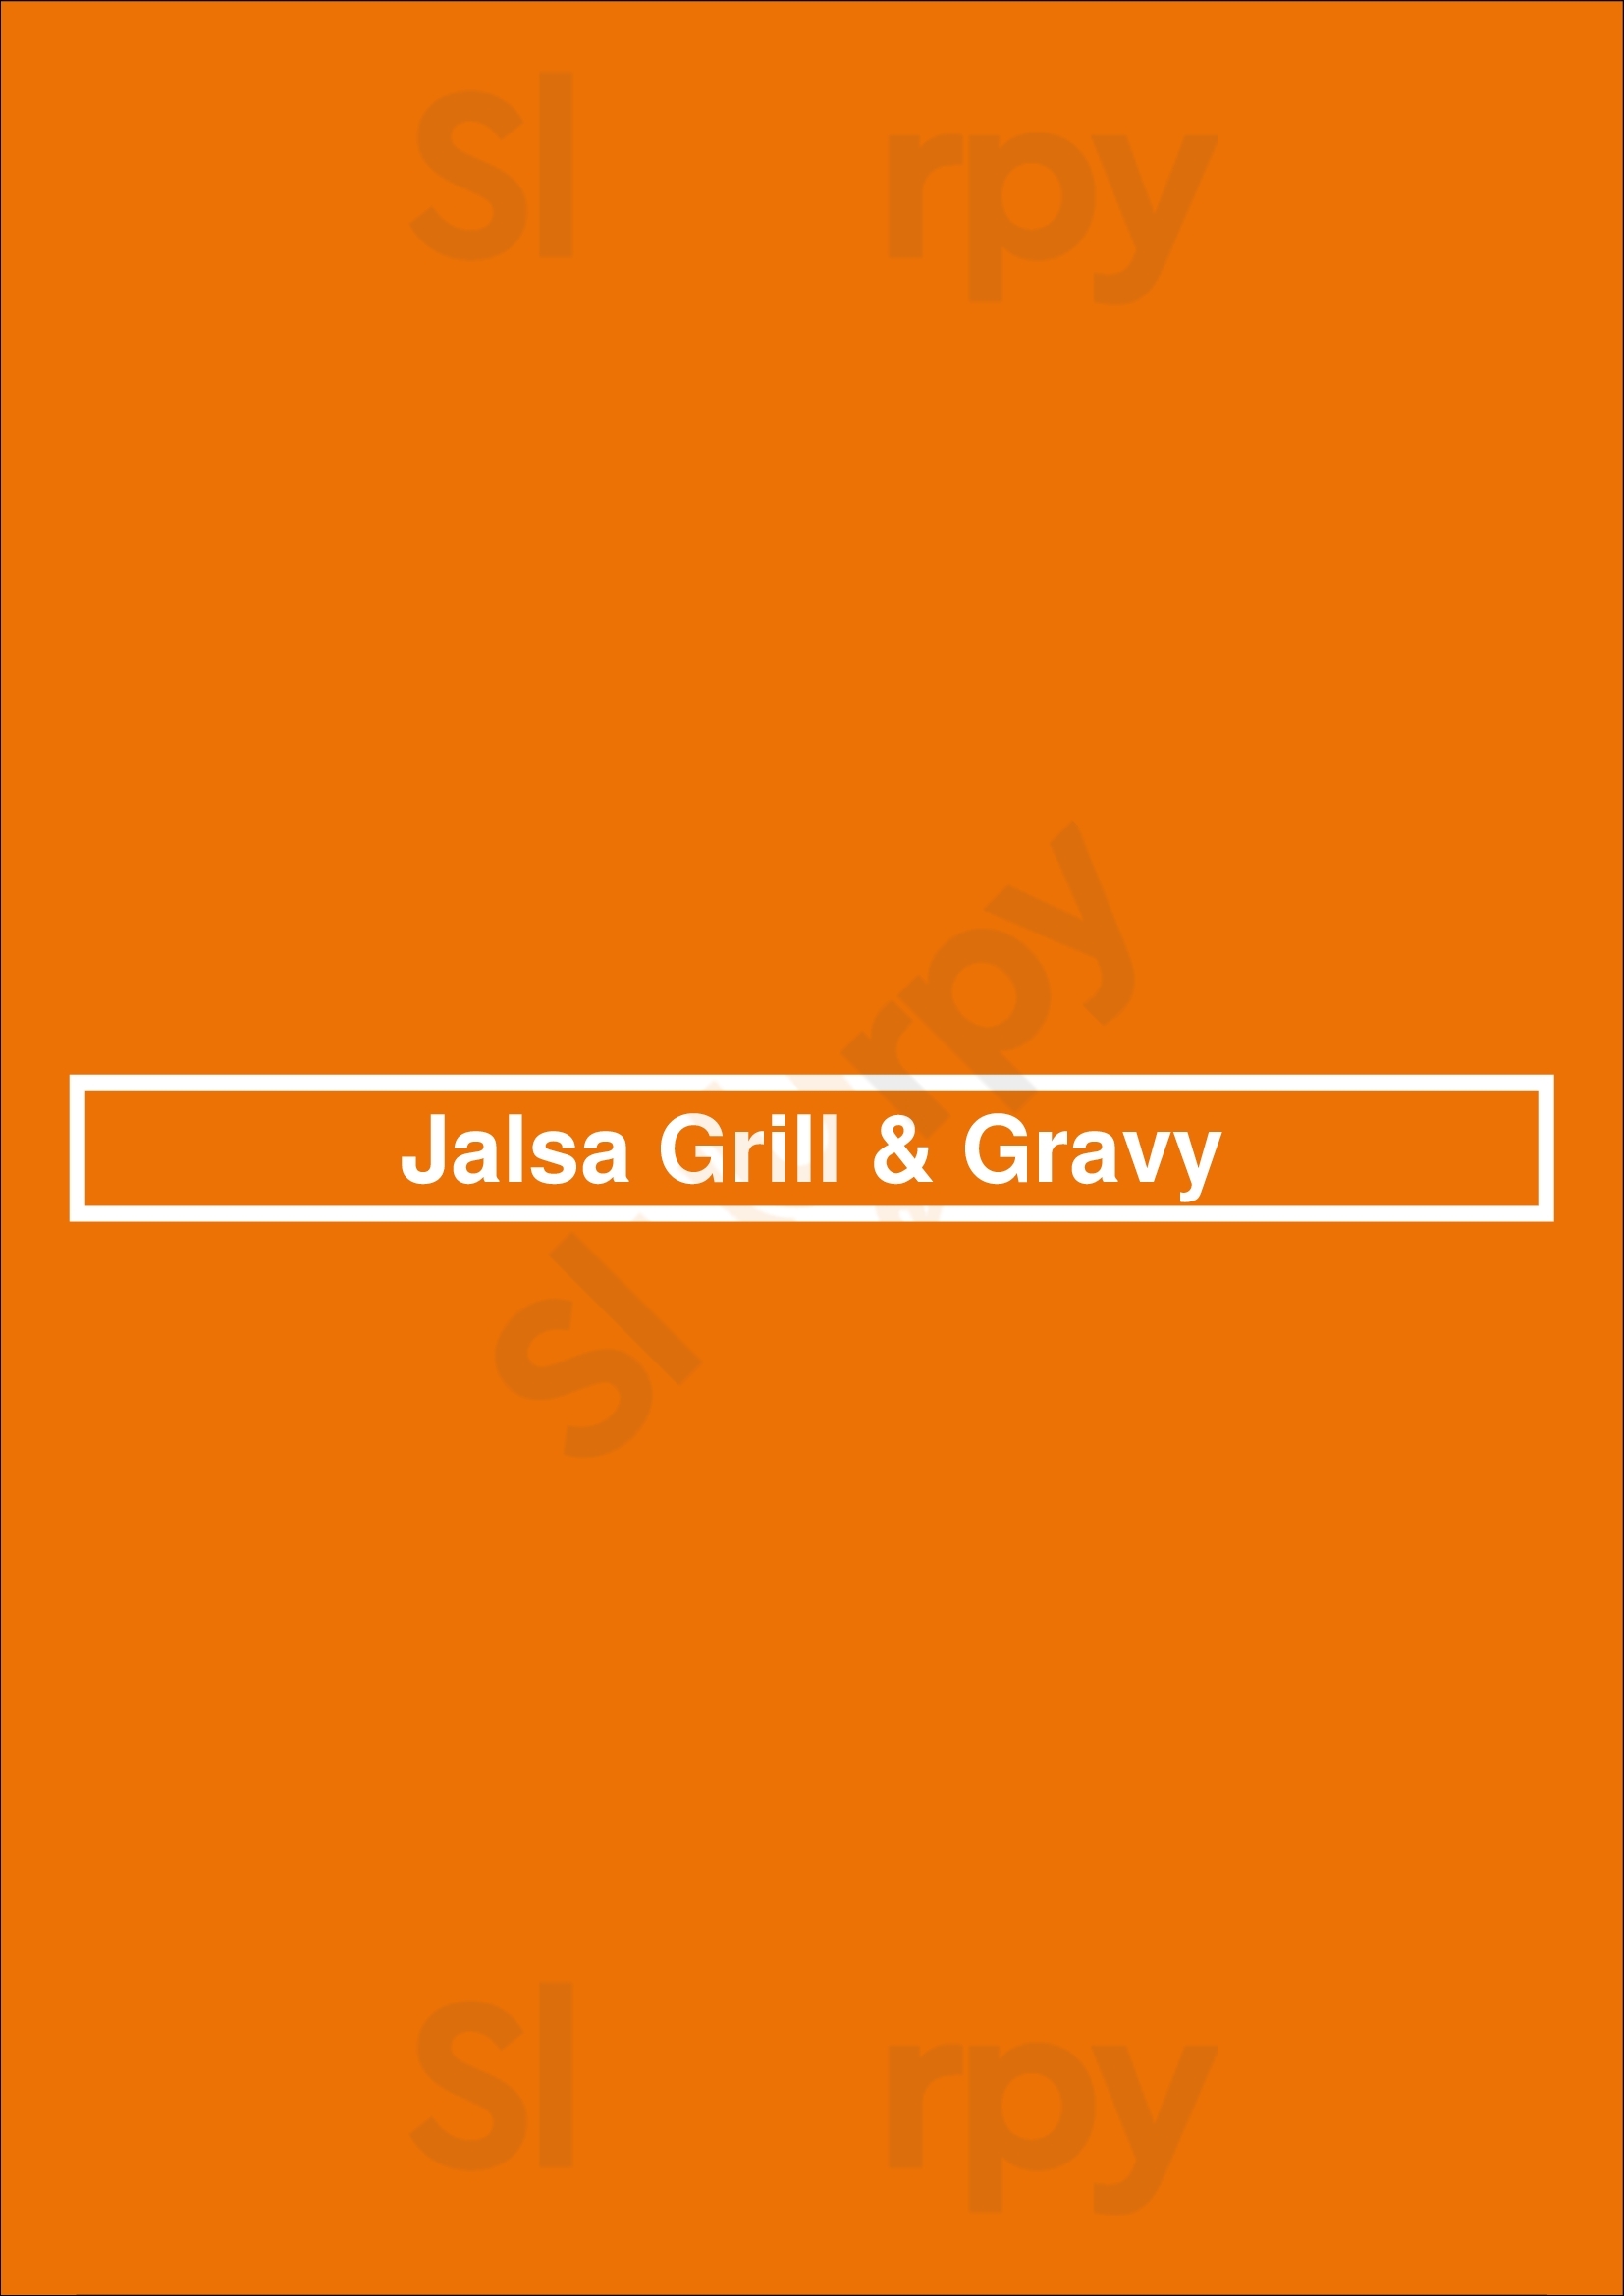 Jalsa Grill & Gravy Brooklyn Menu - 1